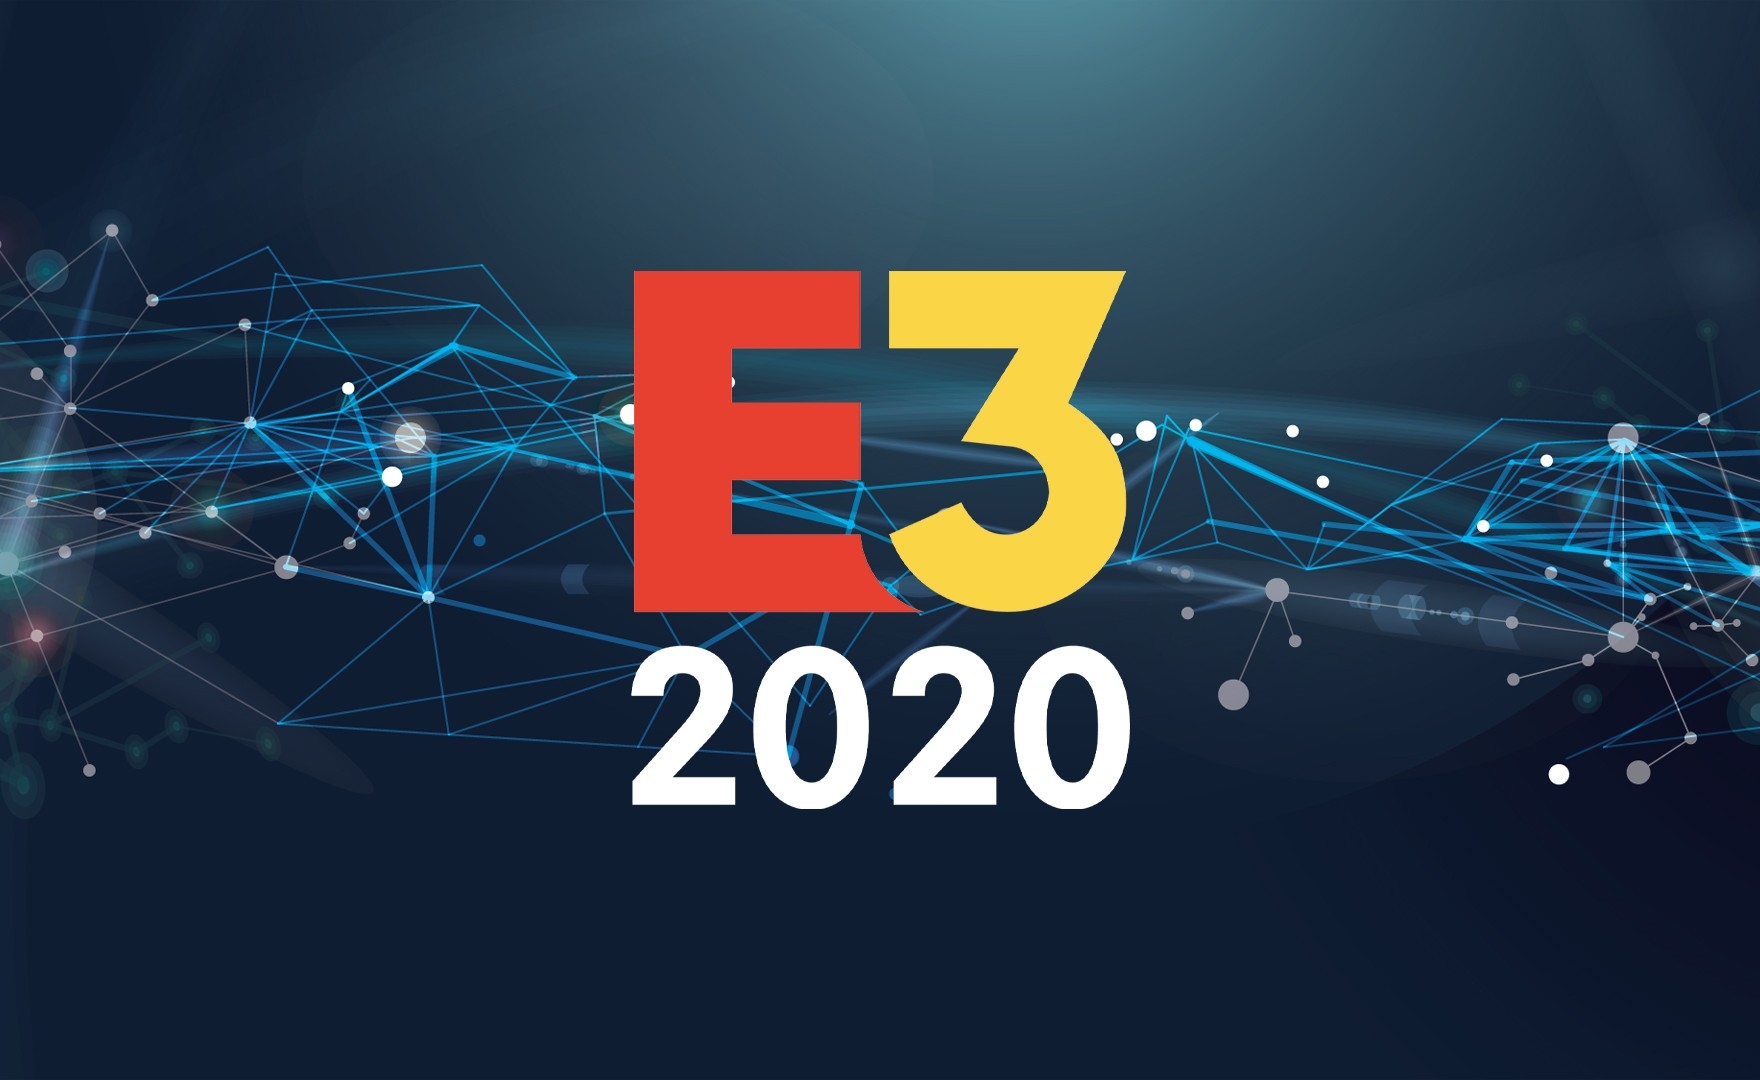 Coronavirus ed E3 2020: Los Angeles è ufficialmente in stato di emergenza